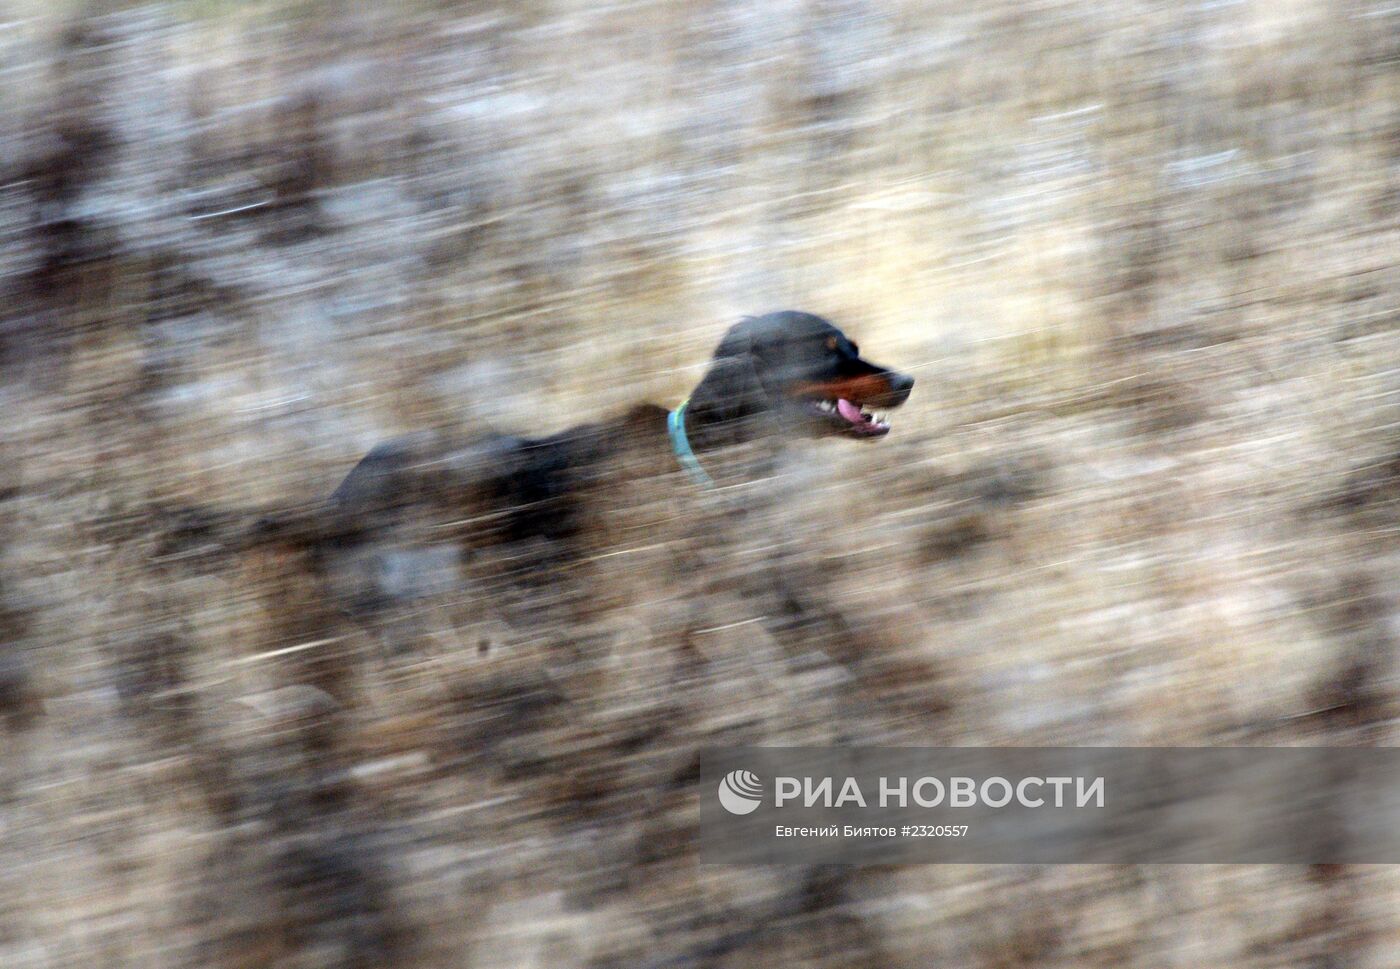 Соколиная охота в Московской области